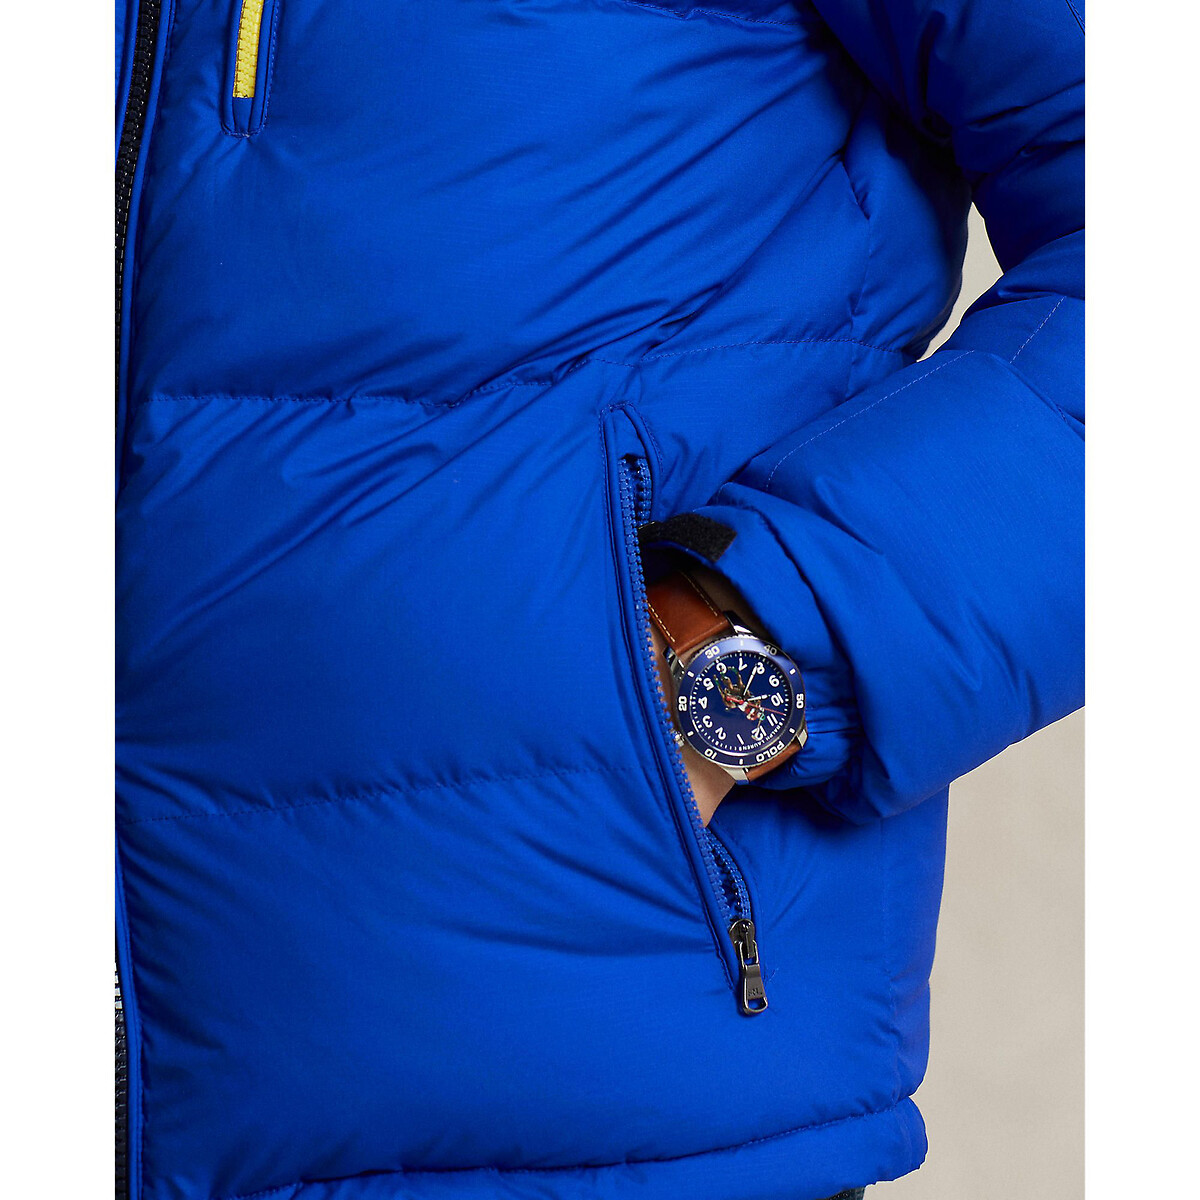 Куртка стеганая двухцветная со съемным капюшоном  S синий LaRedoute, размер S - фото 5